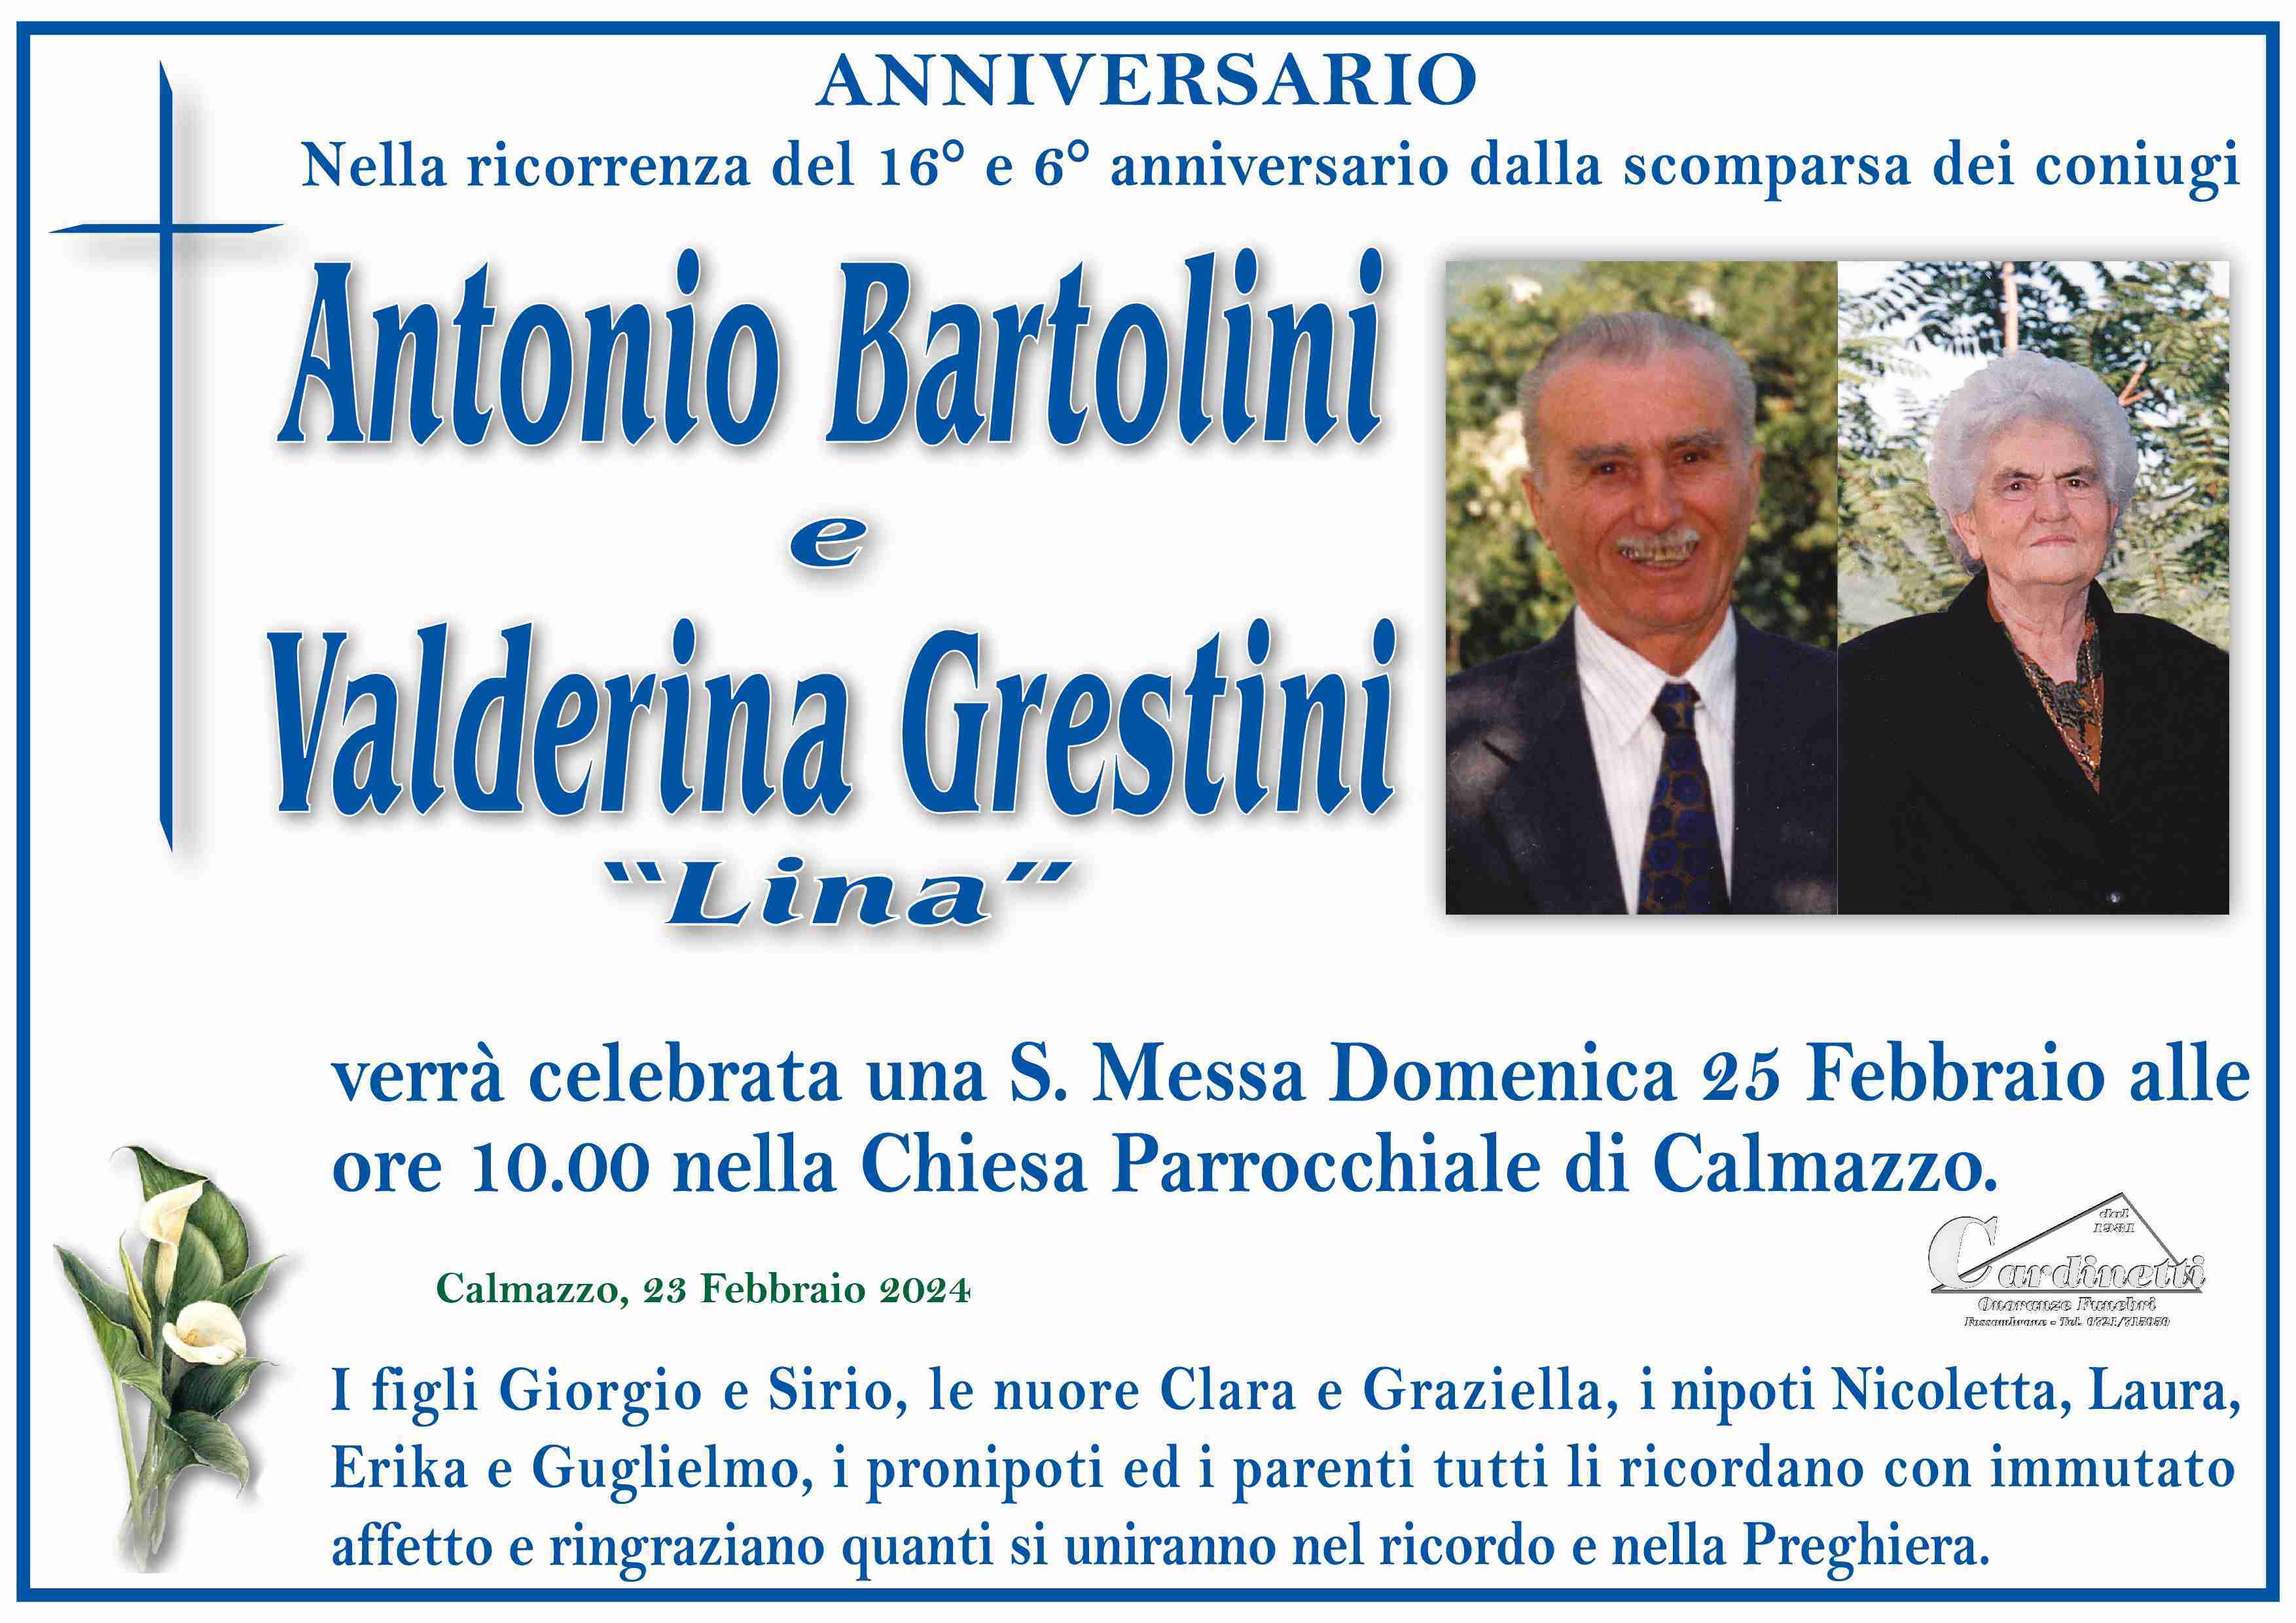 Antonio Bartolini e Valderina Grestini